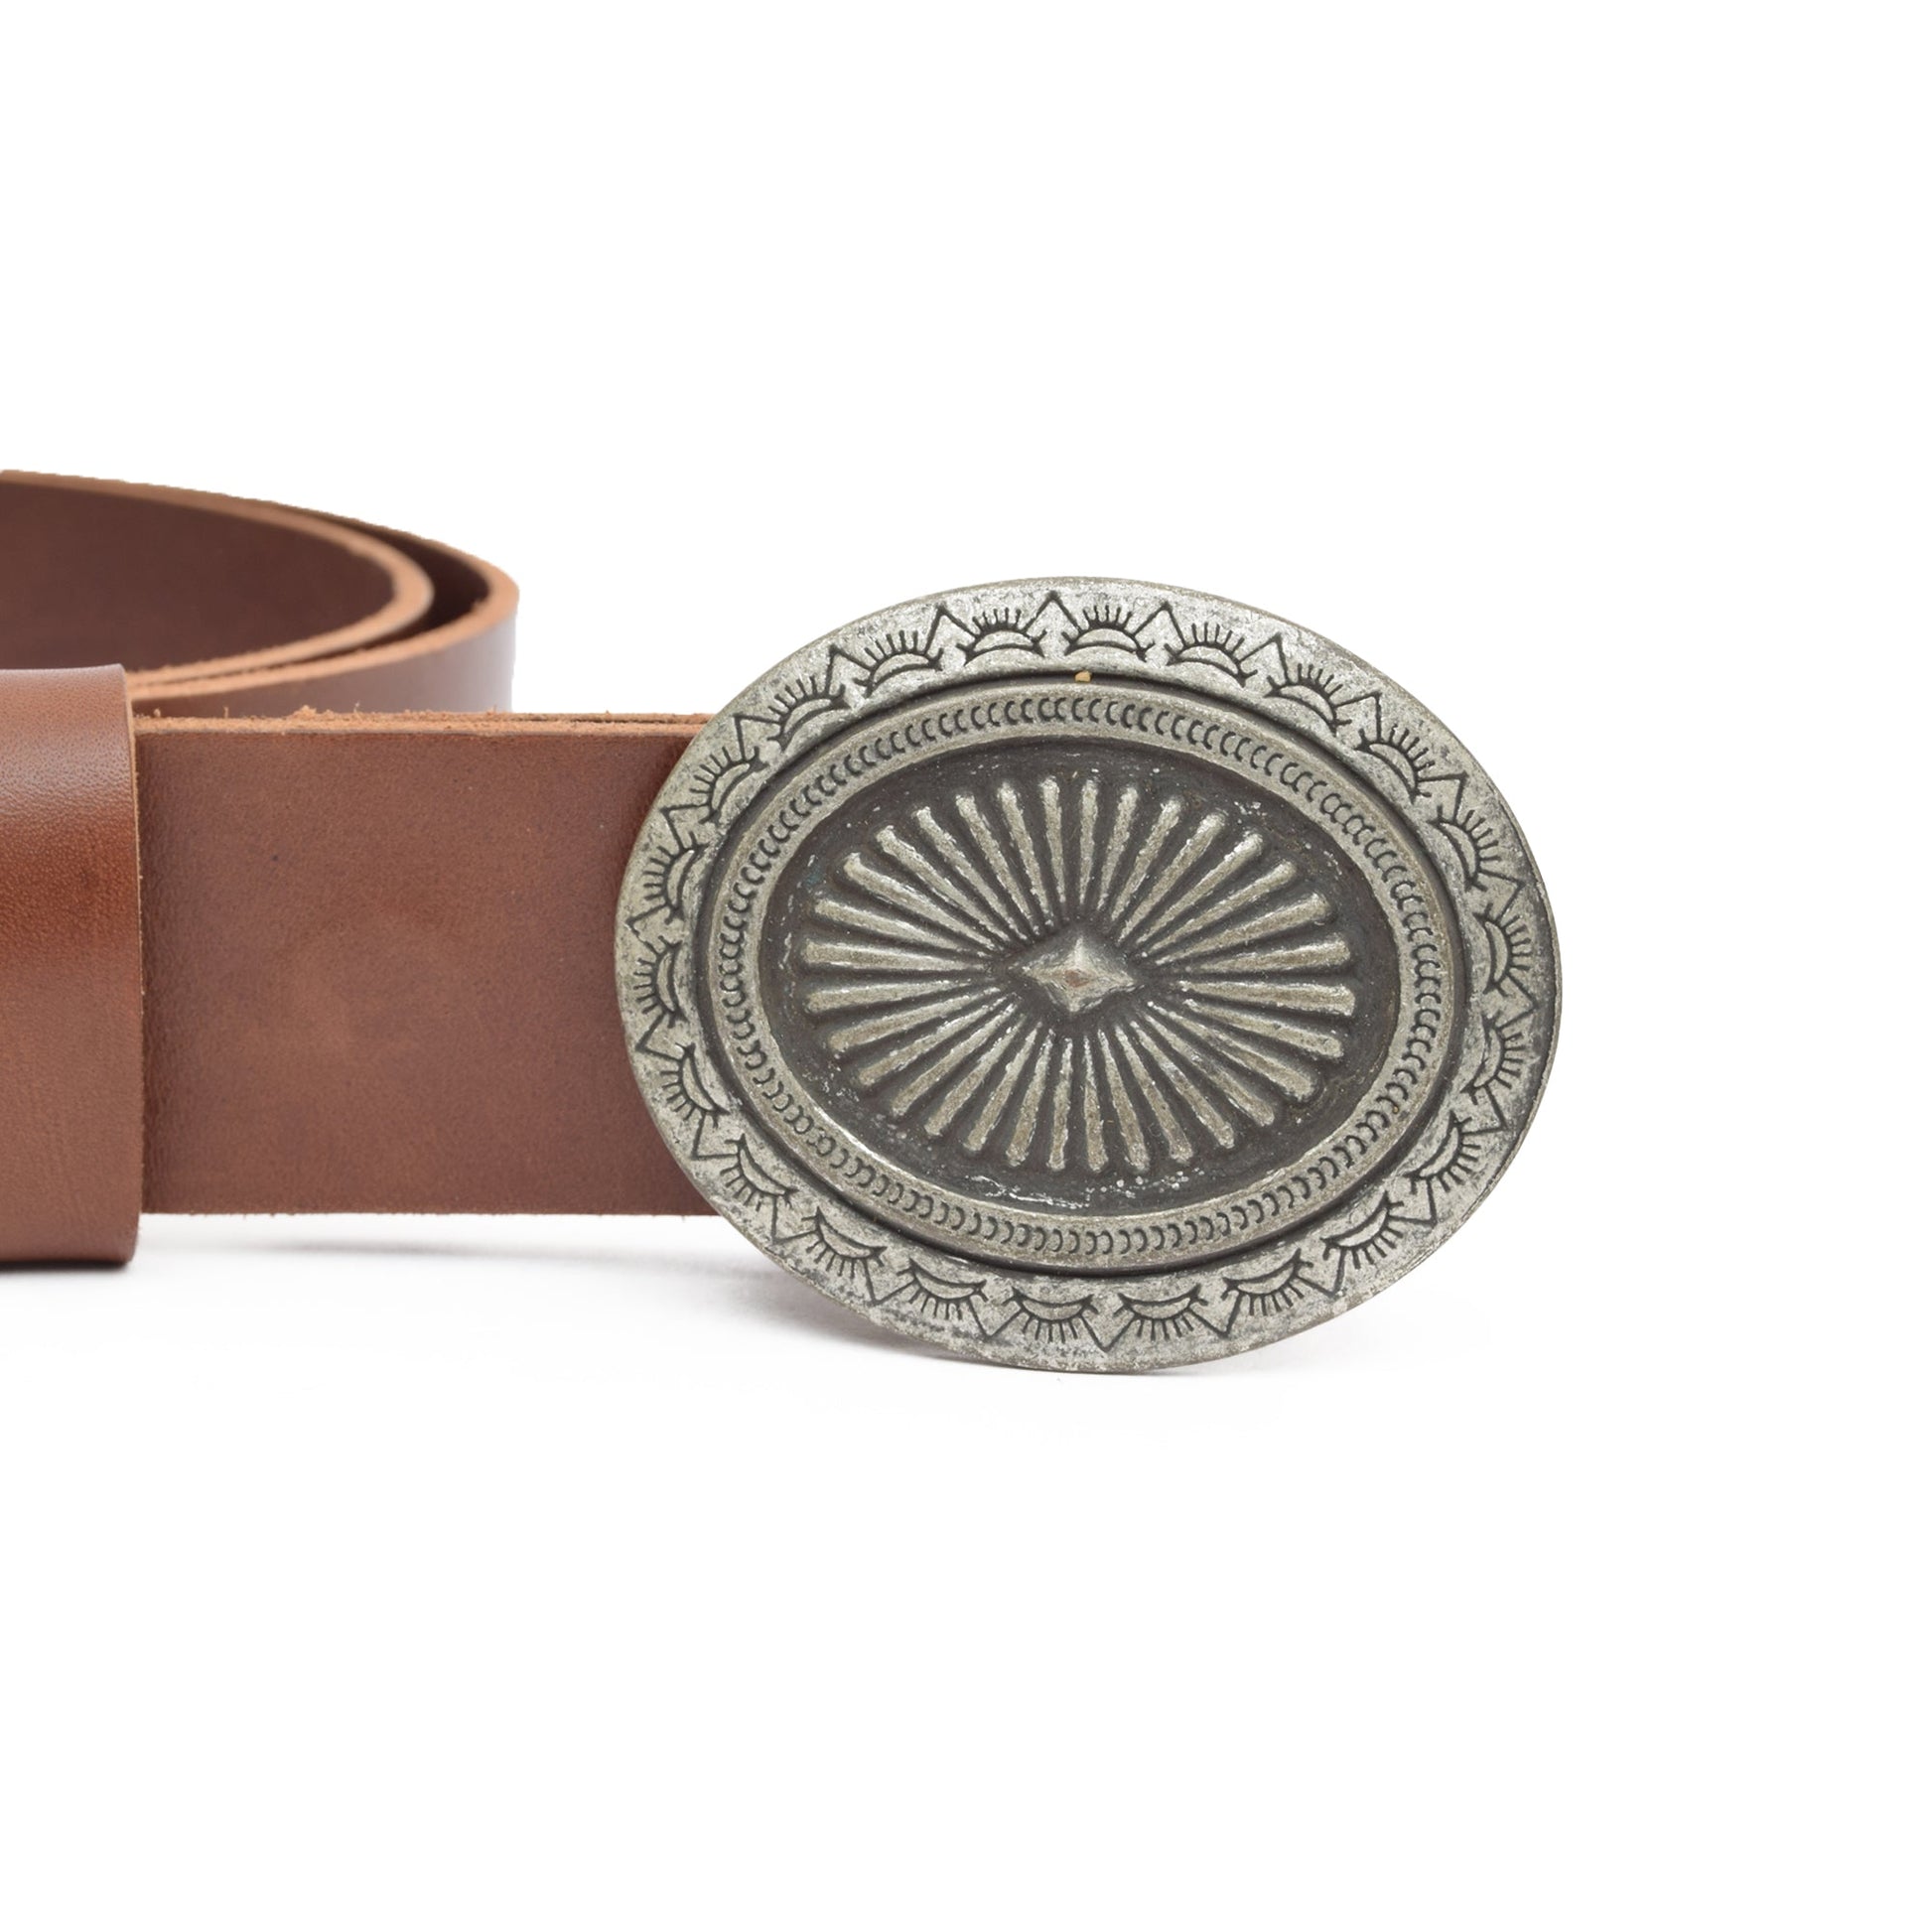 Parium Oxyde Toned Removable Metal Belt Buckle - Buckles Zengoda Shop online from Artisan Brands